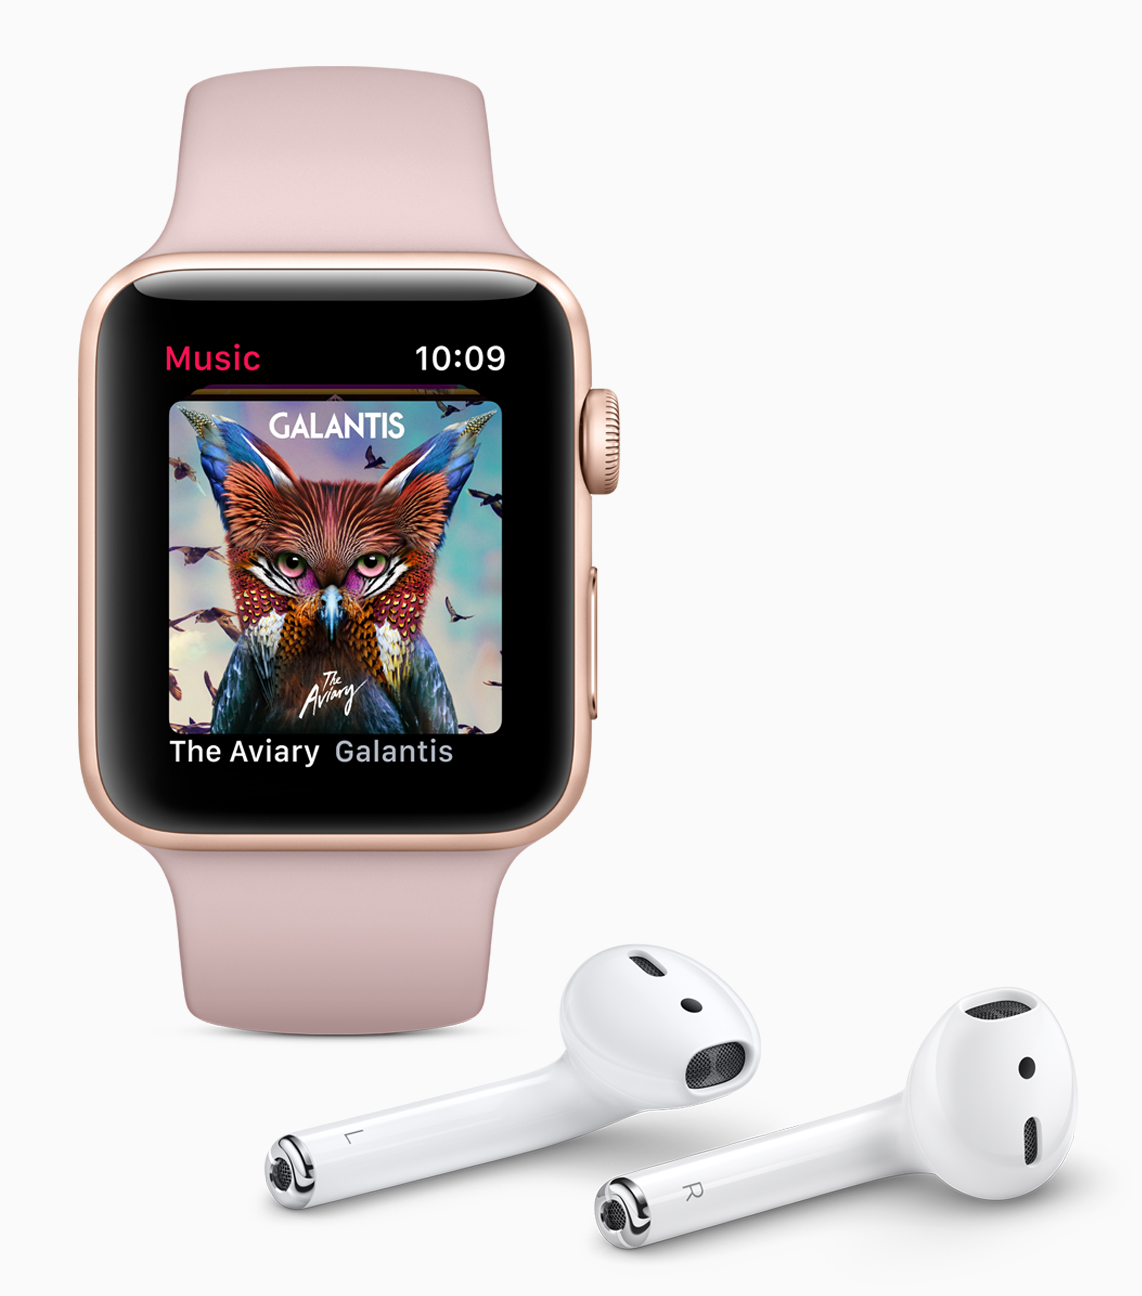 Ach ja, Telefonieren und Musik hören kann man mit der Apple Watch Series 3 auch ohne iPhone